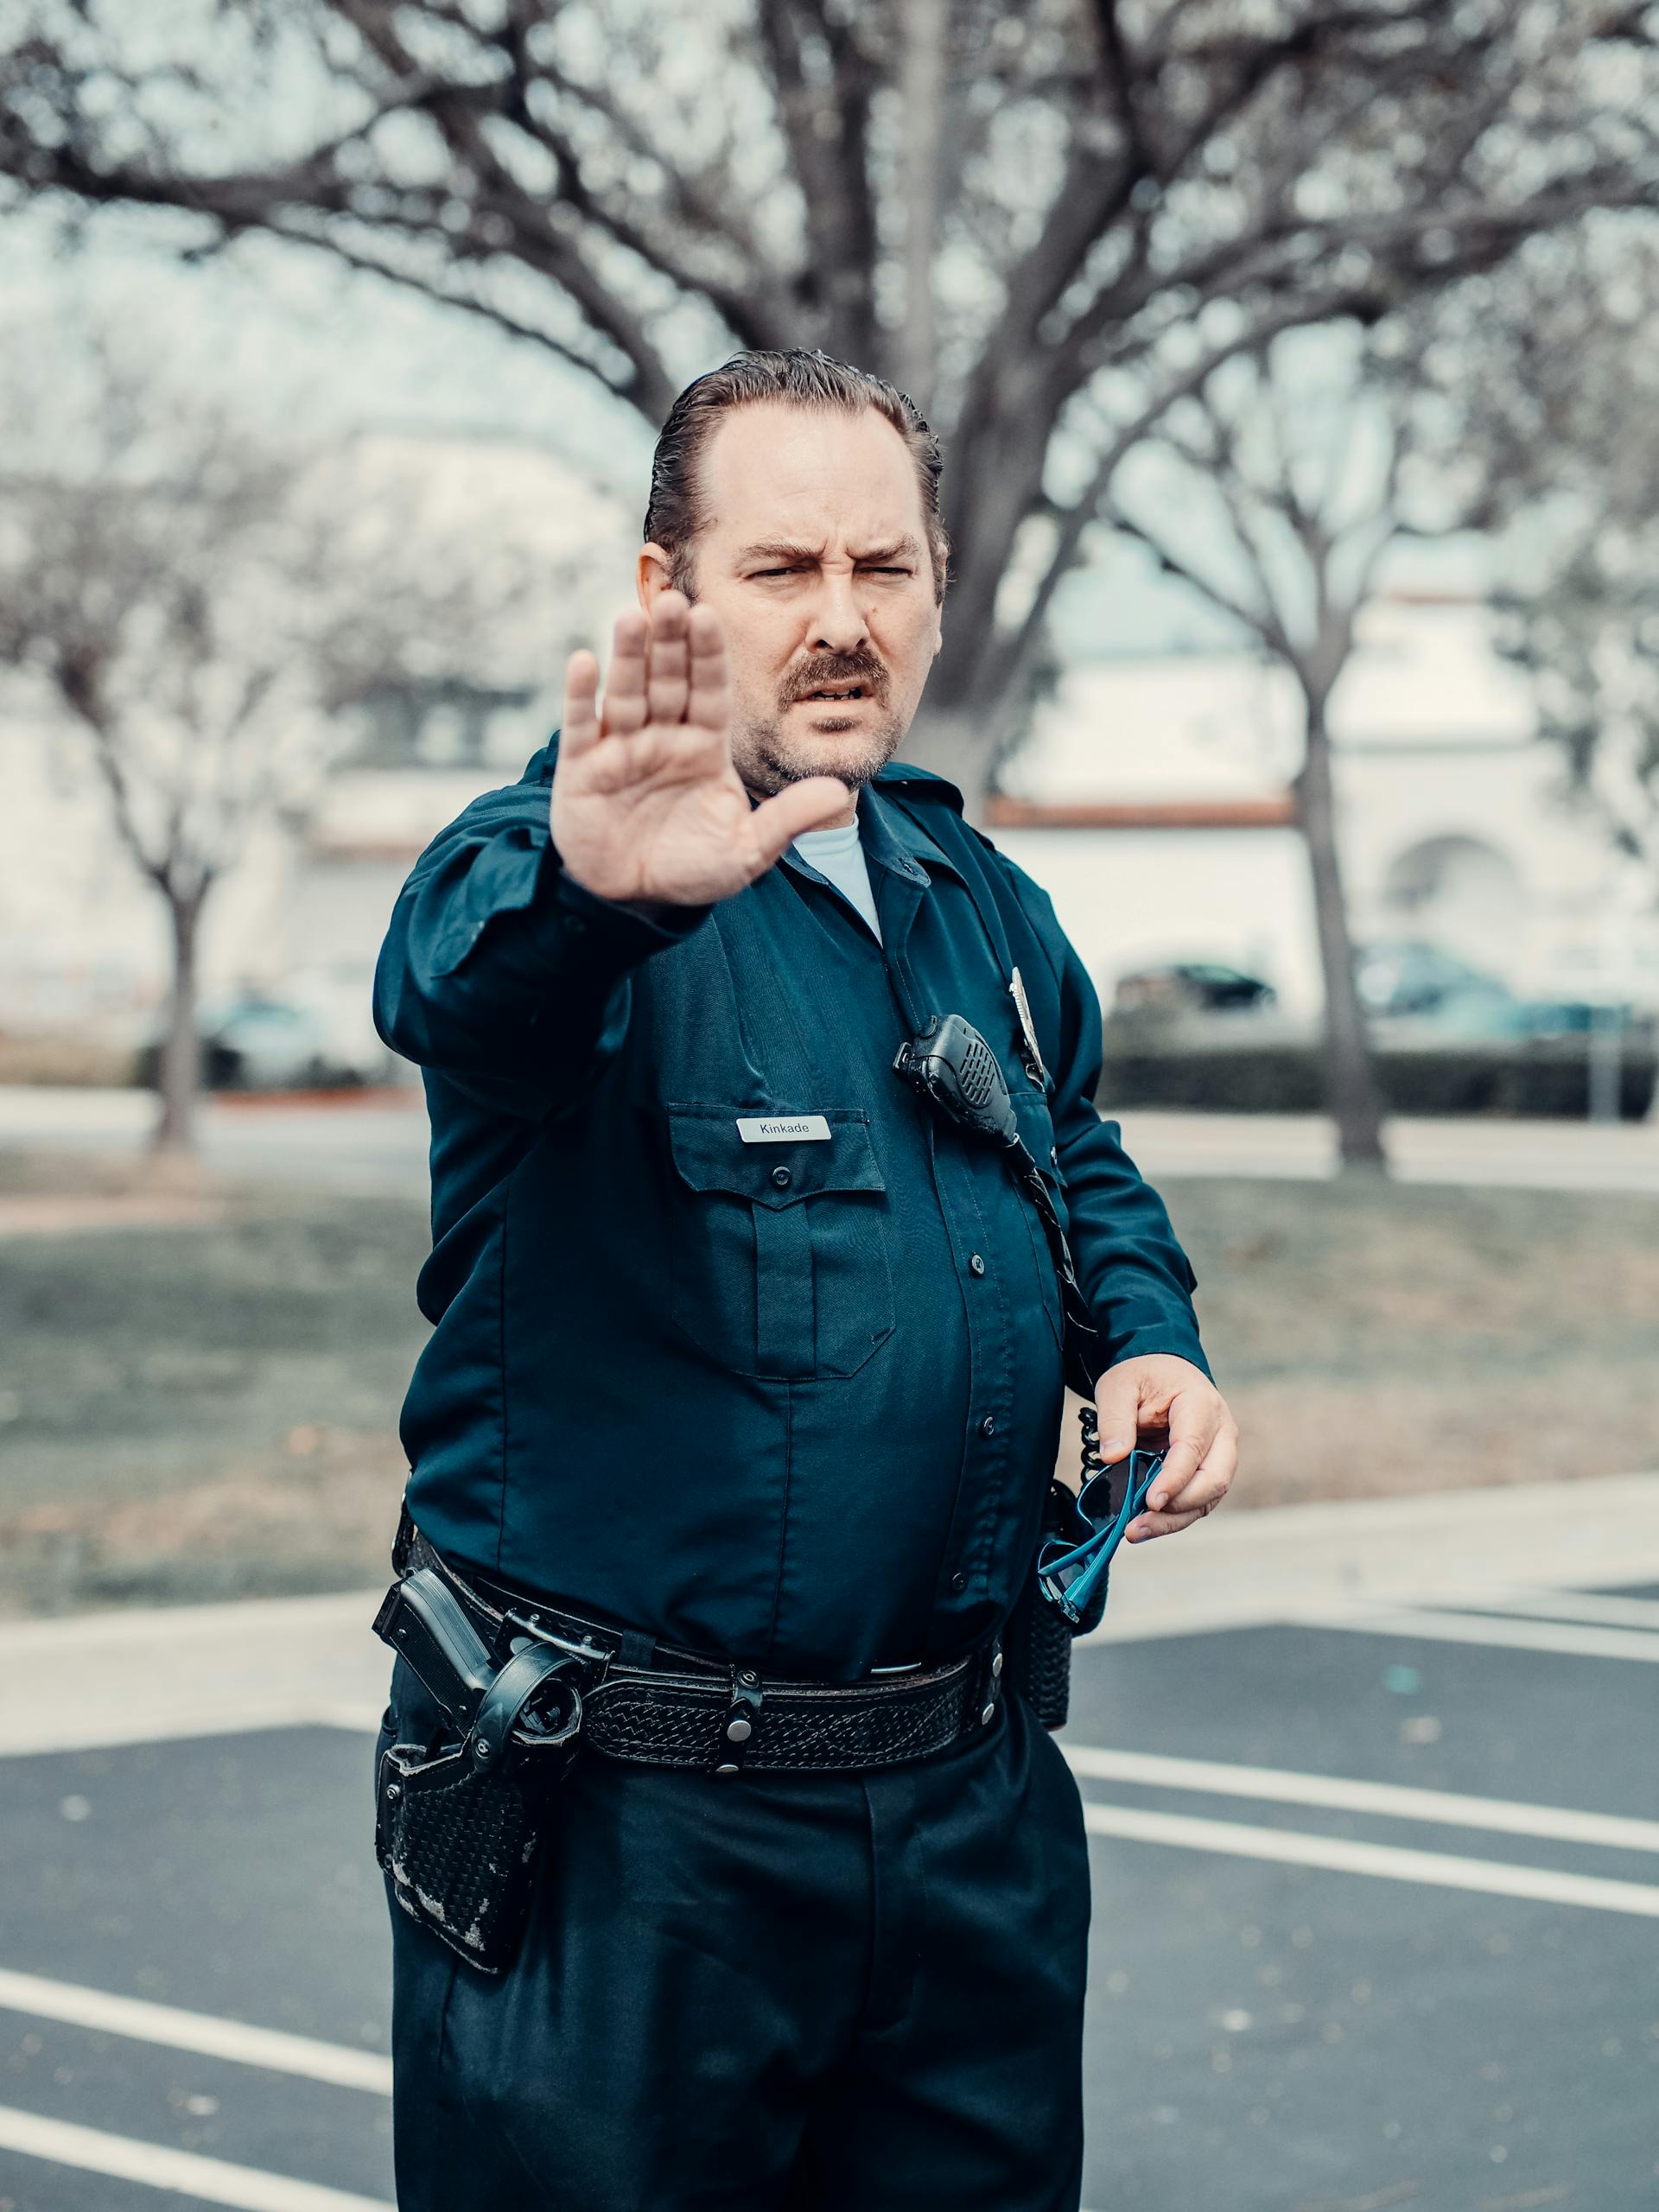 Un policier avec le bras levé | Source : Pexels